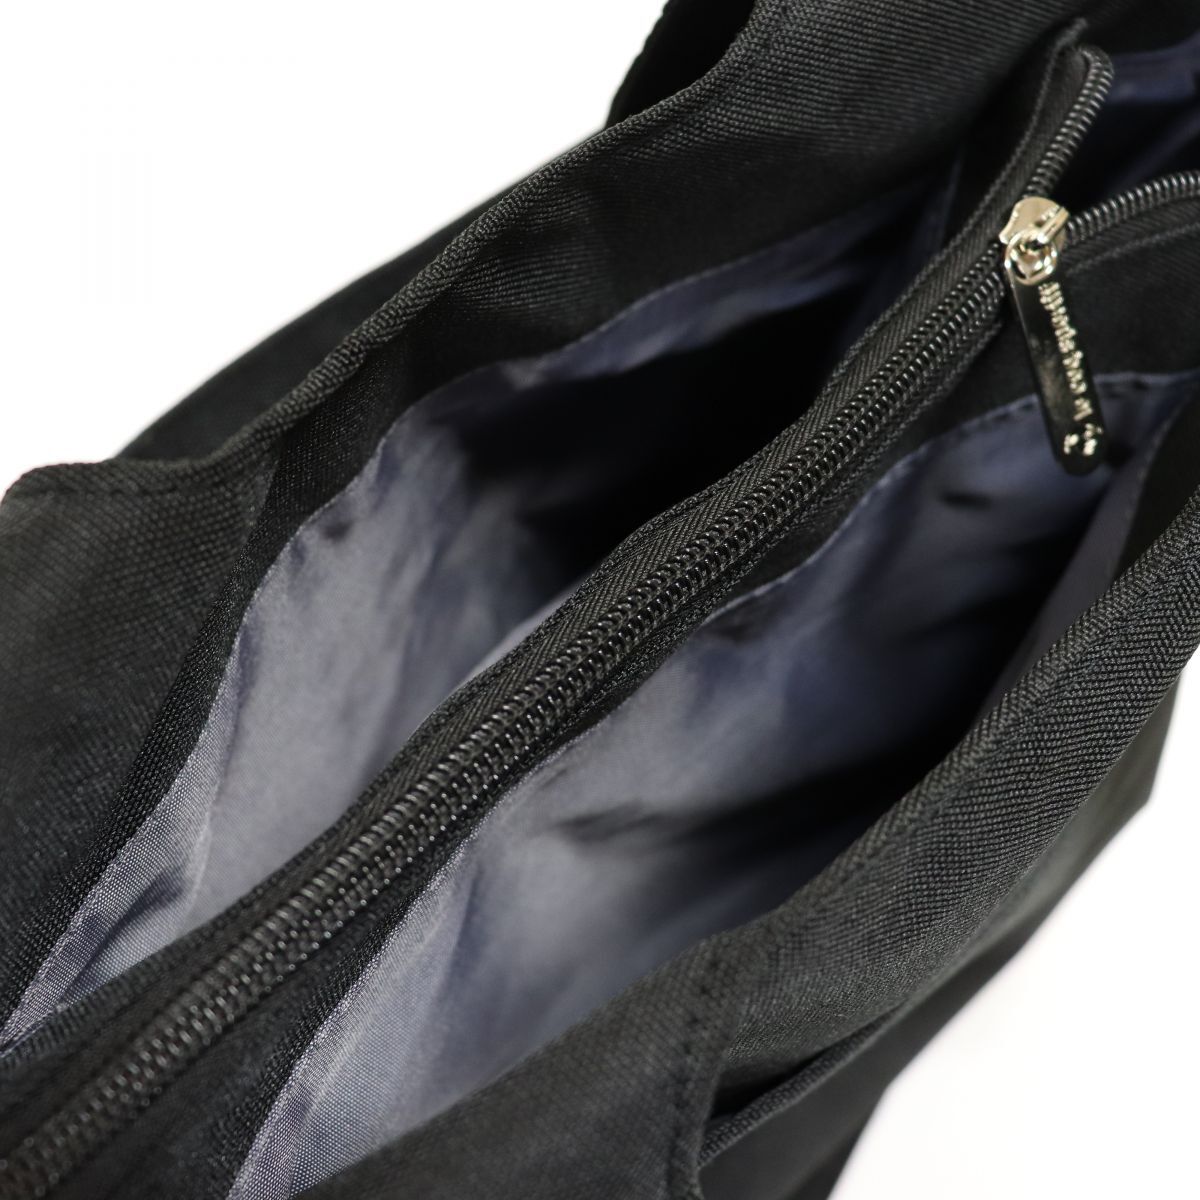 * Le Coq le coq sportif new goods pocket fully 2WAY sweat shoulder bag tote bag bag BAG black [36231-001] one six *QWER#